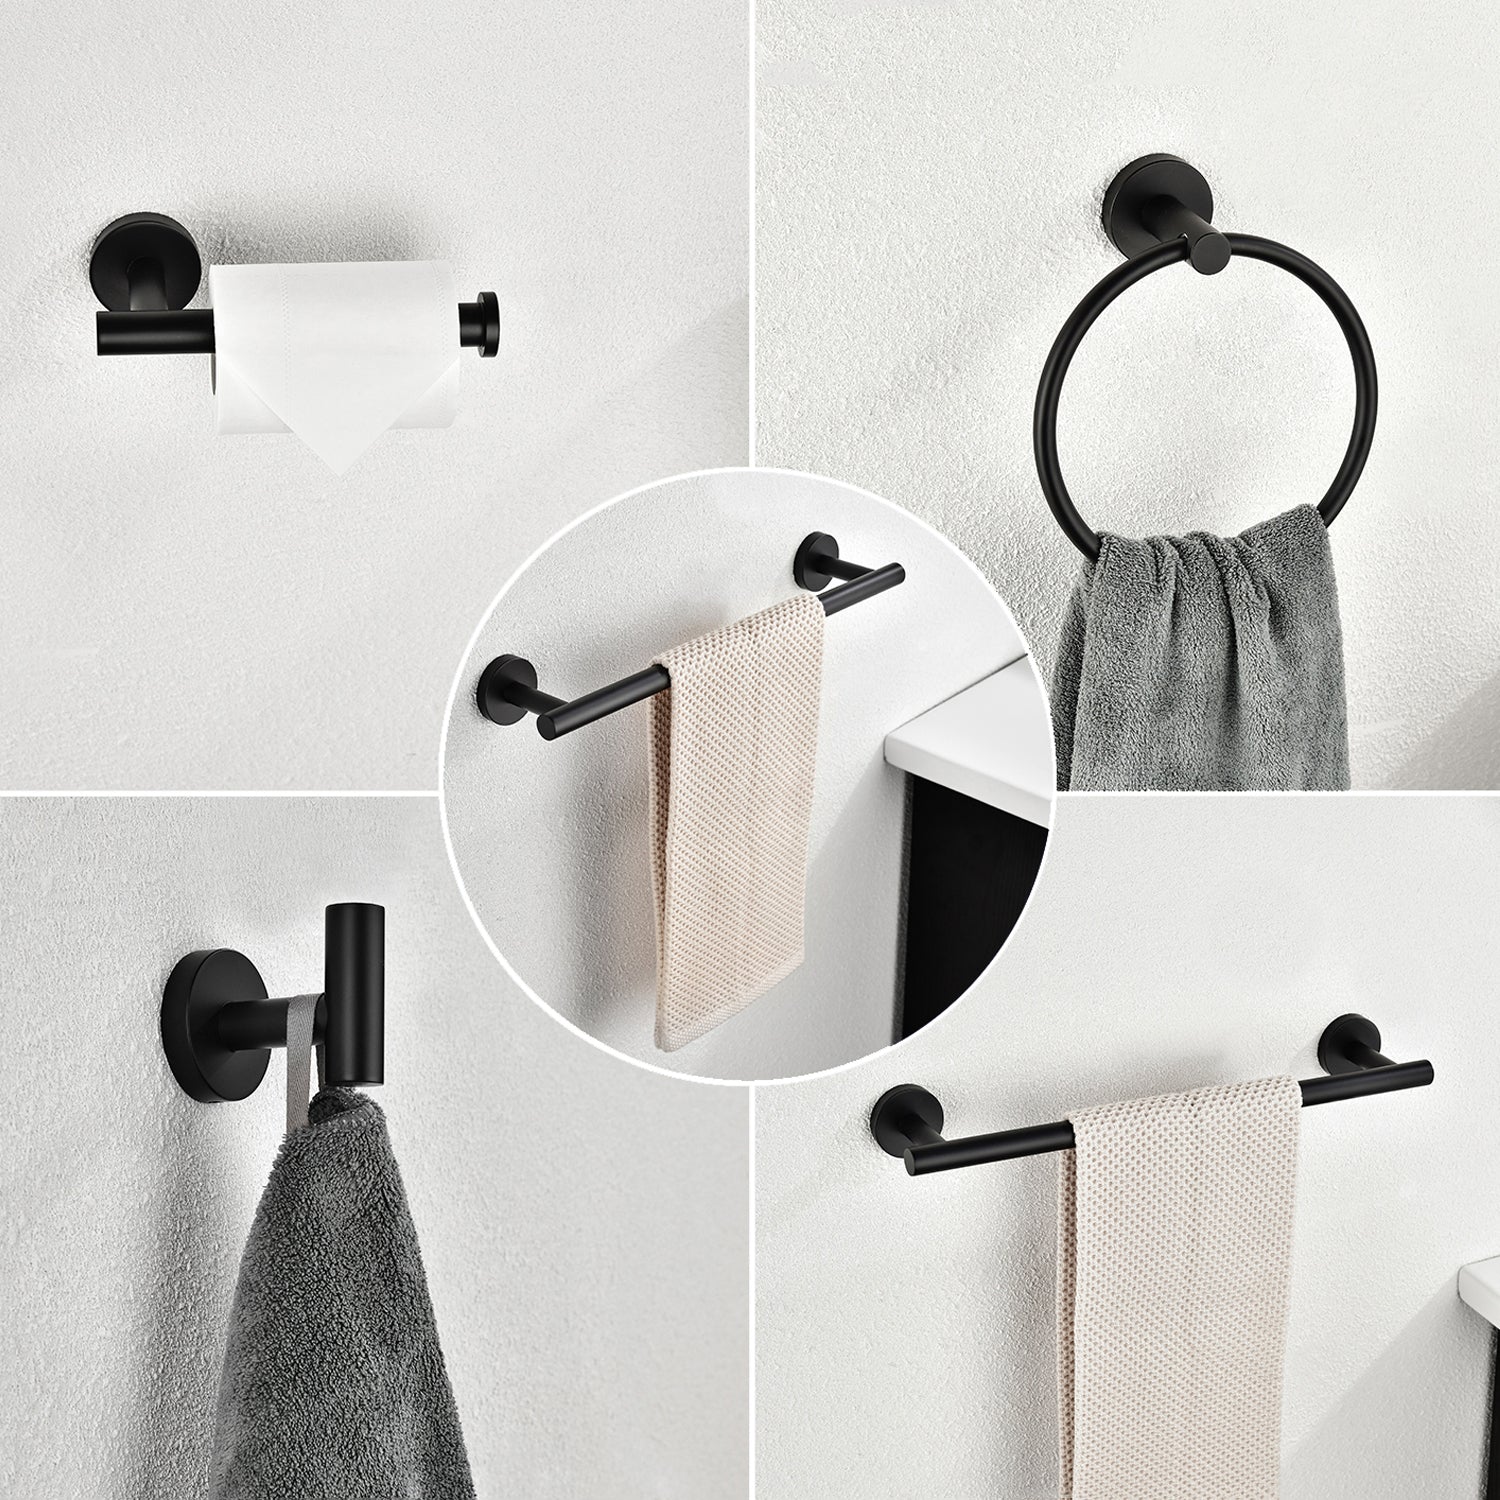 6 Piece Stainless Steel Bathroom Towel Rack Set Wall matte black-stainless steel